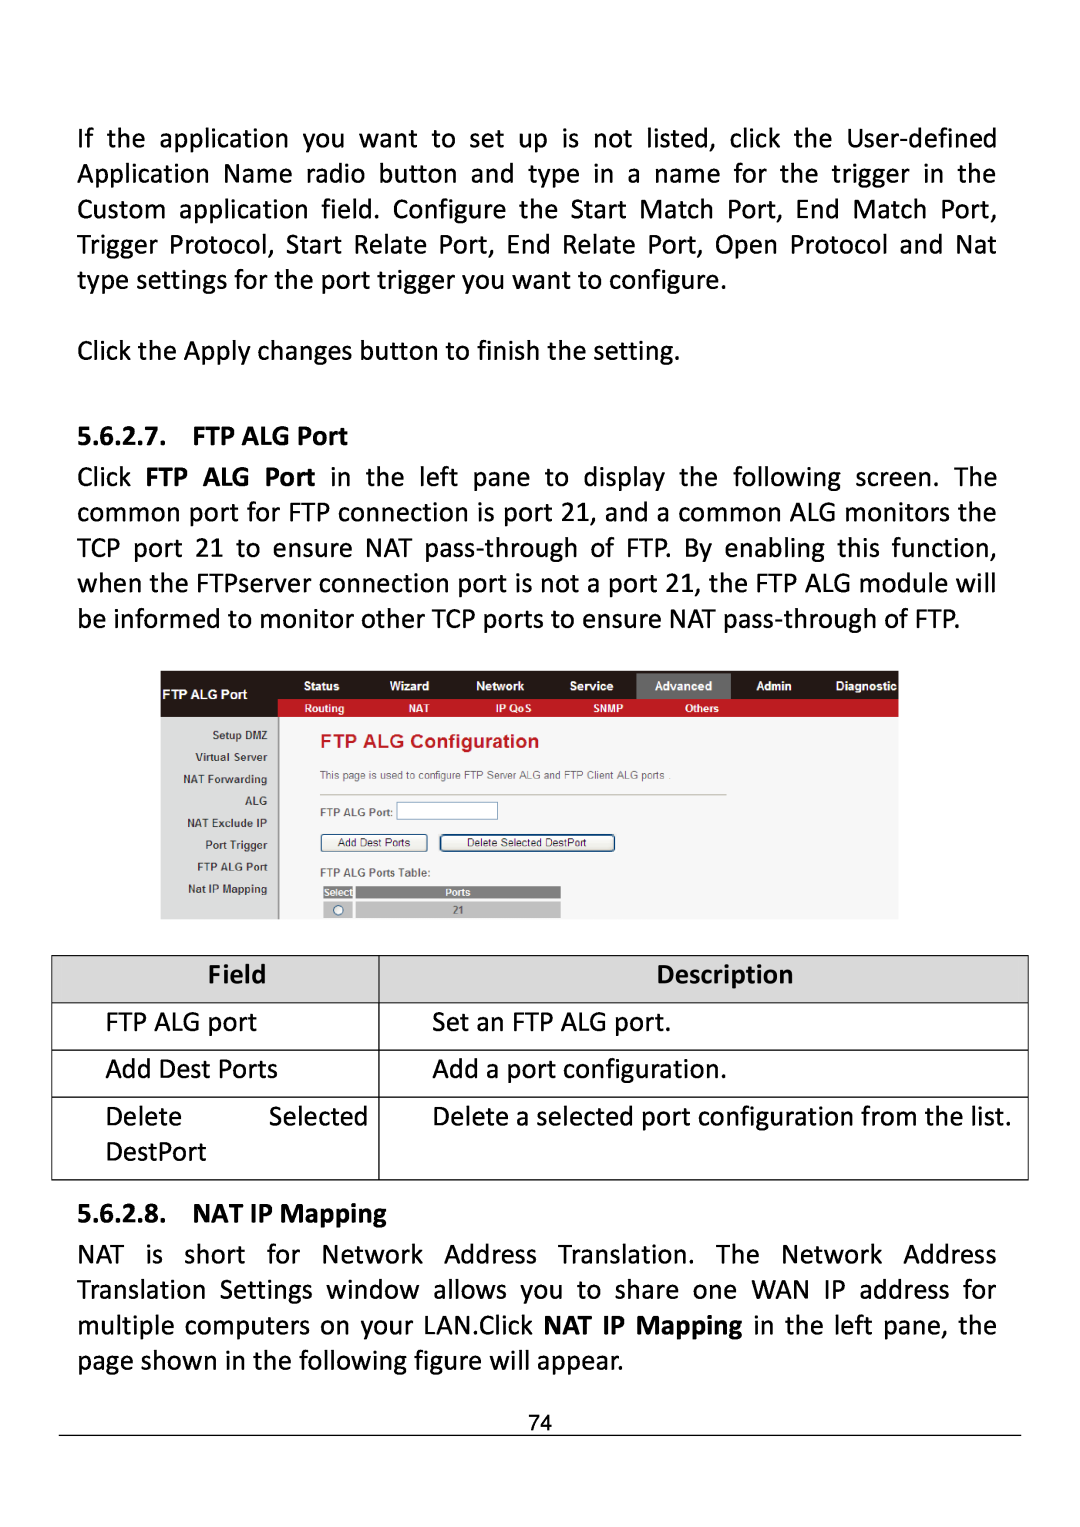 Edimax Technology AR-7211B V2 manual FTP ALG Port, 5.6.2.8, NAT IP Mapping, Field, Description 